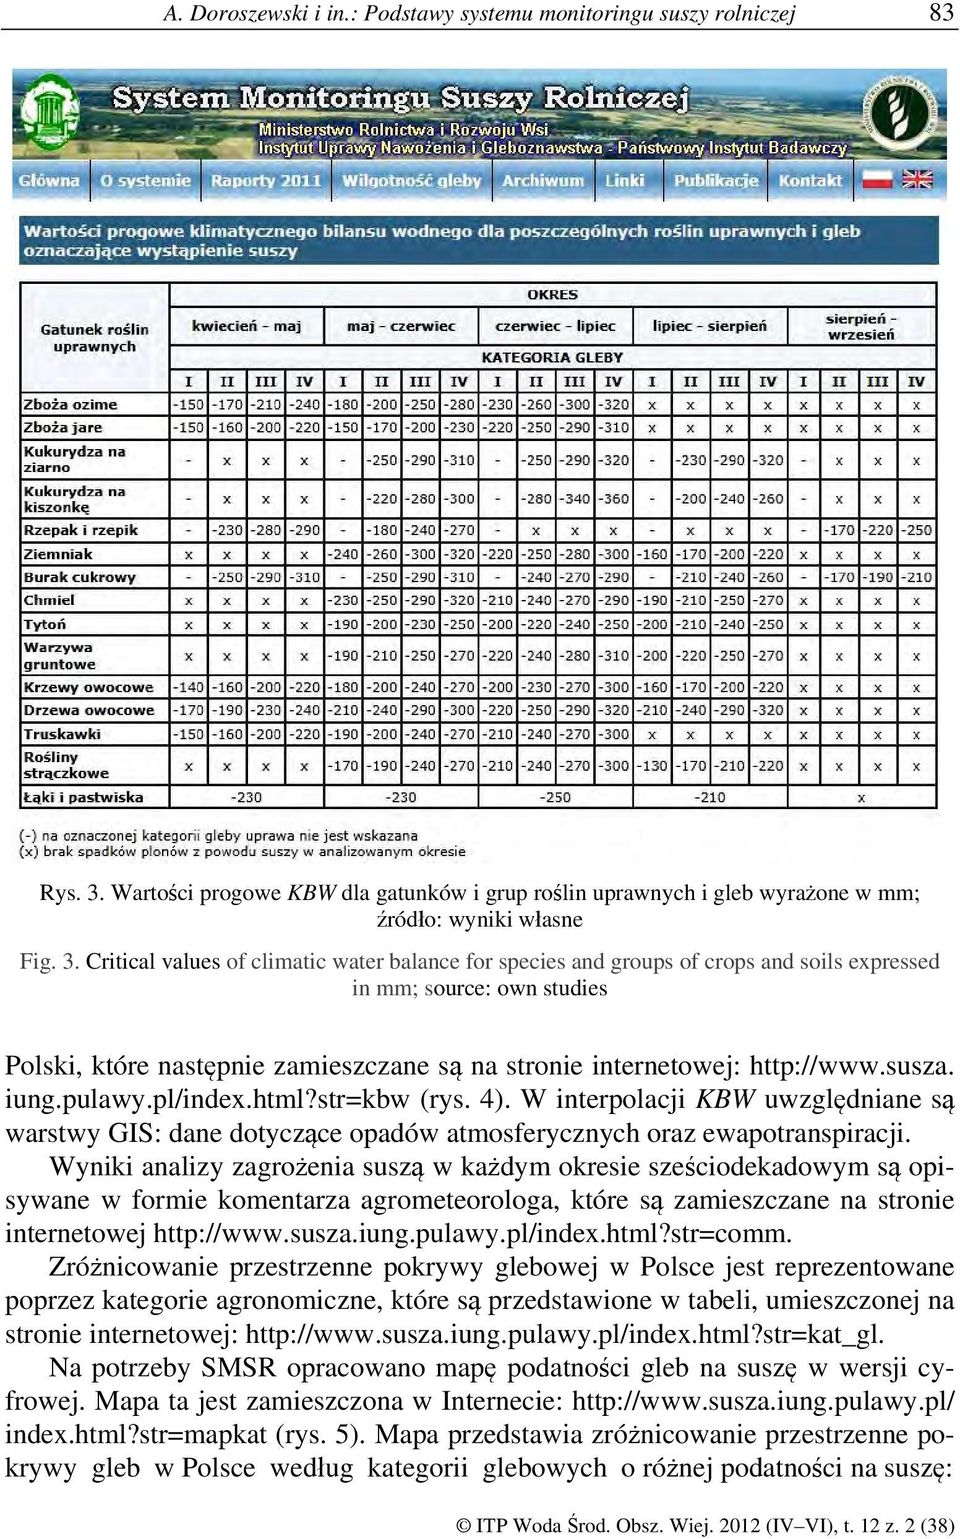 Critical values of climatic water balance for species and groups of crops and soils expressed in mm; source: own studies Polski, które następnie zamieszczane są na stronie internetowej: http://www.